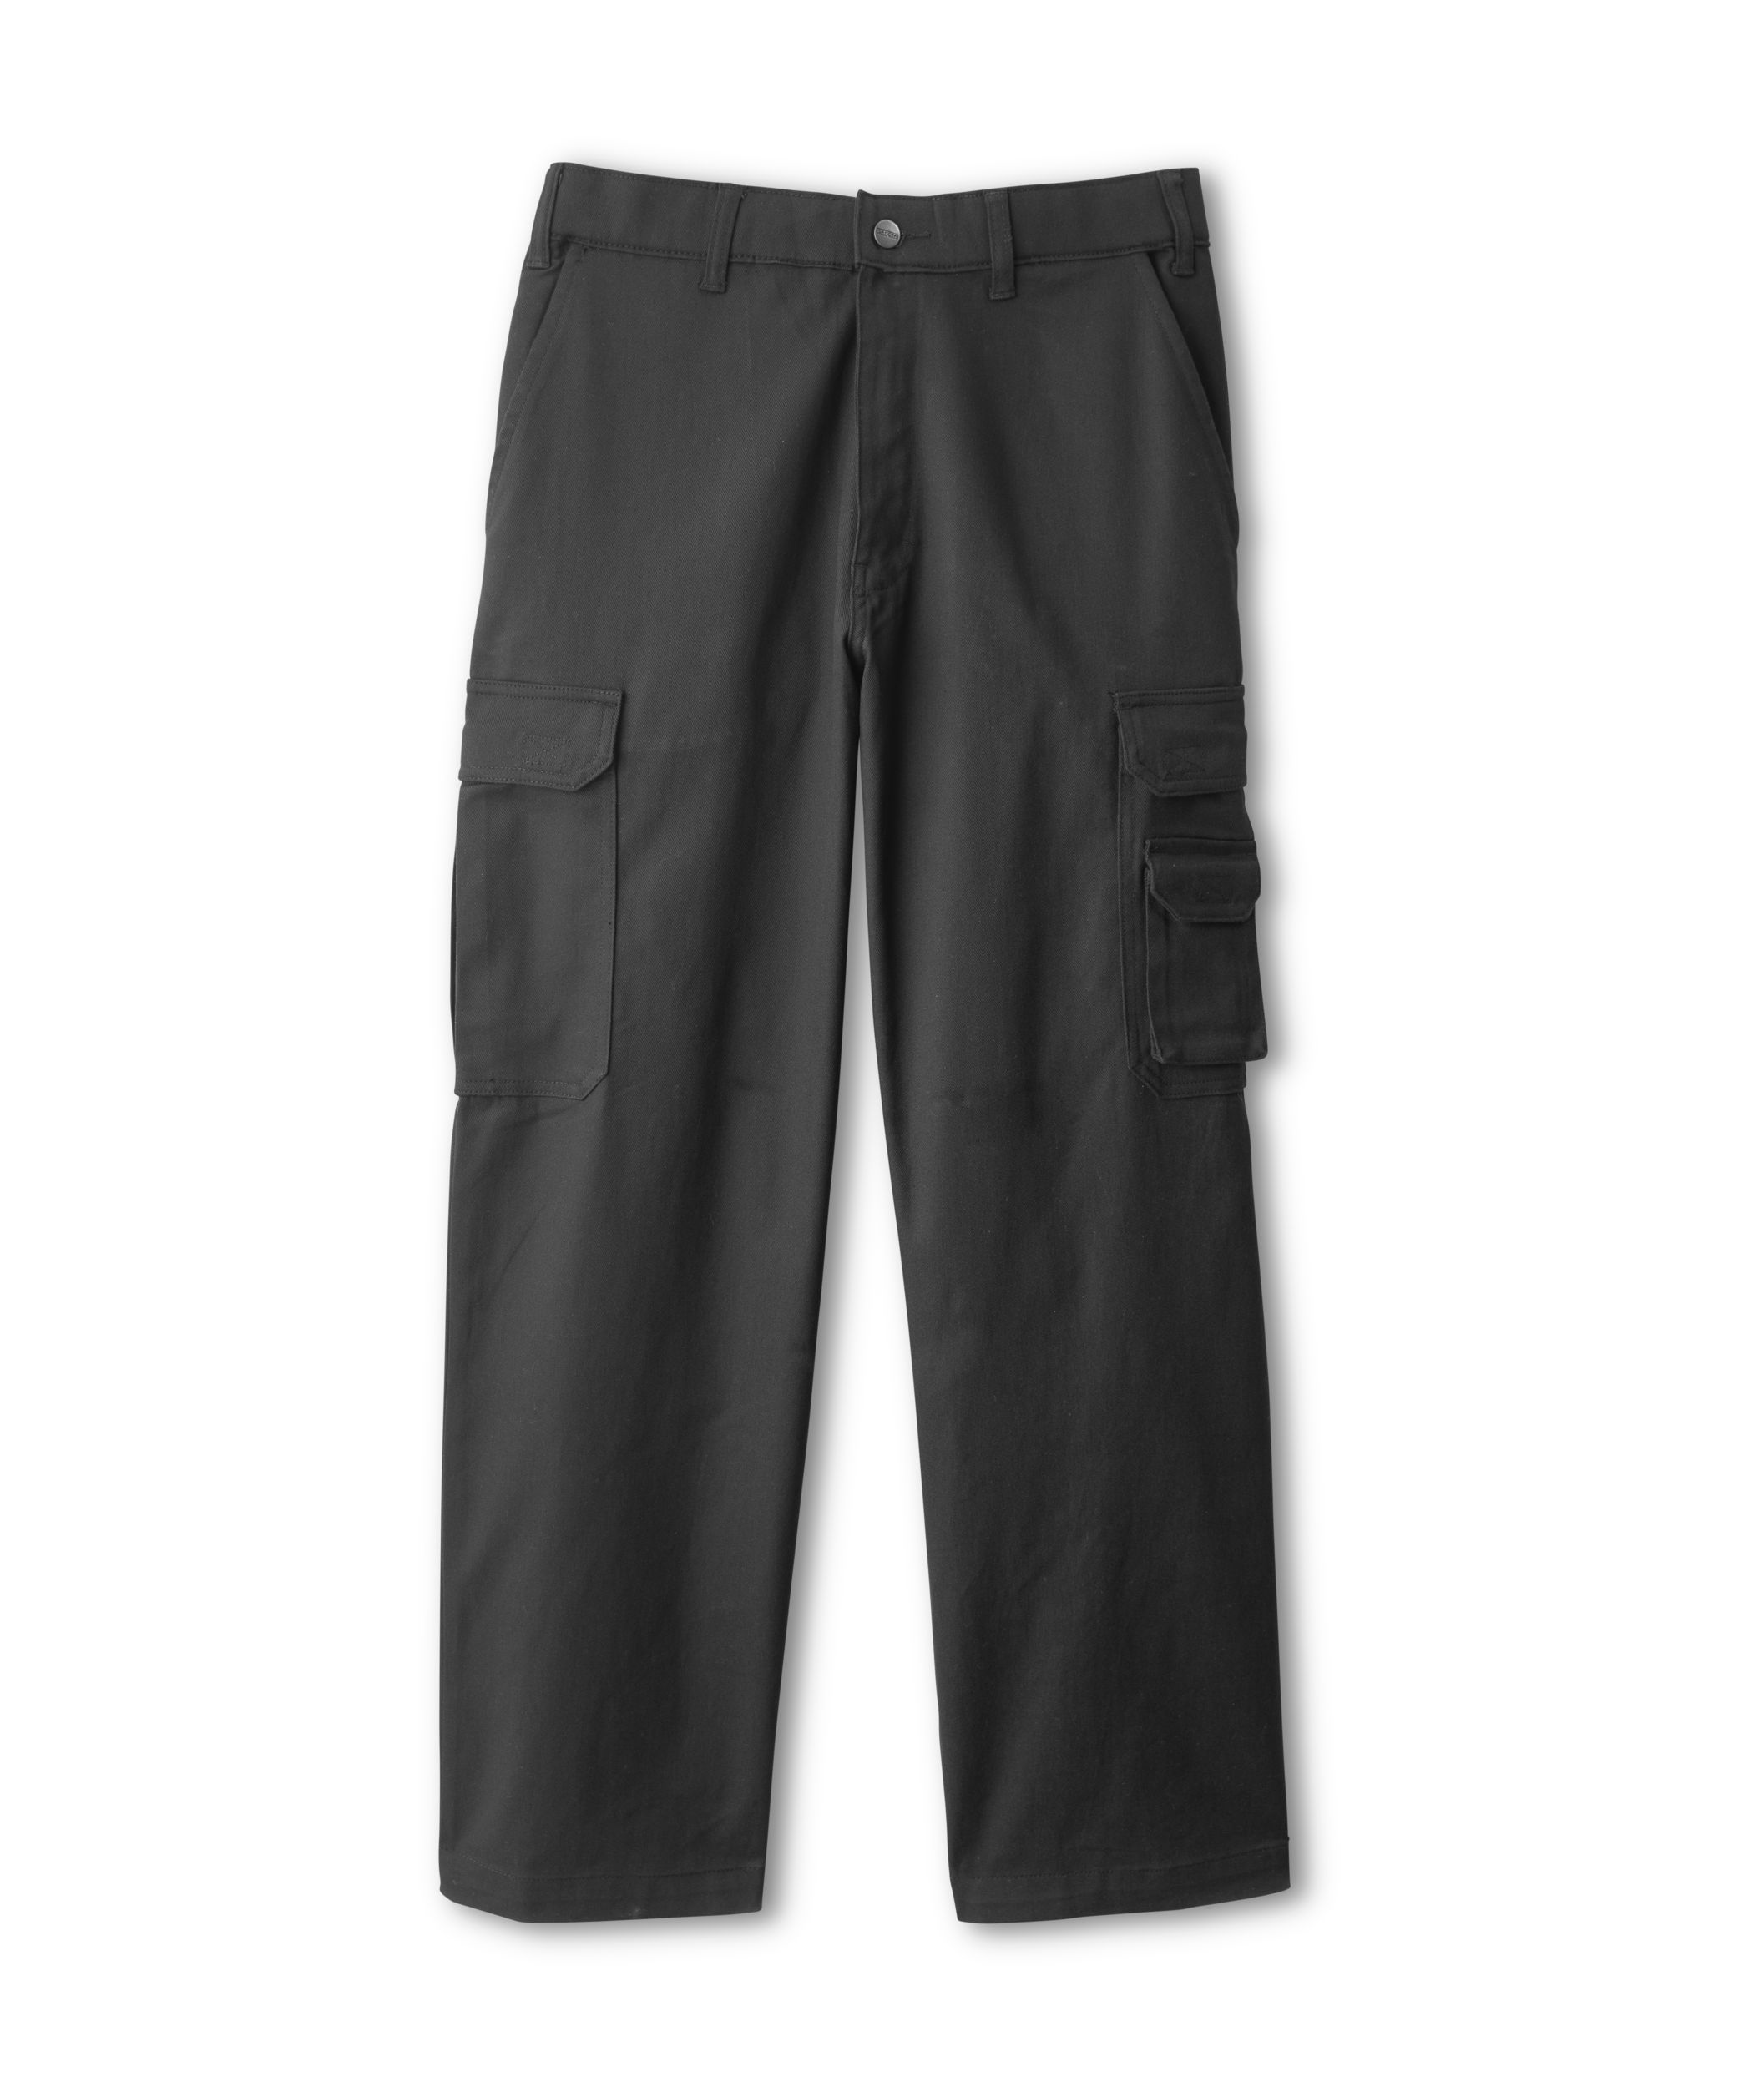 Pantalon Cargo Homme Eté Long Pantalon Noir LH0507PT080